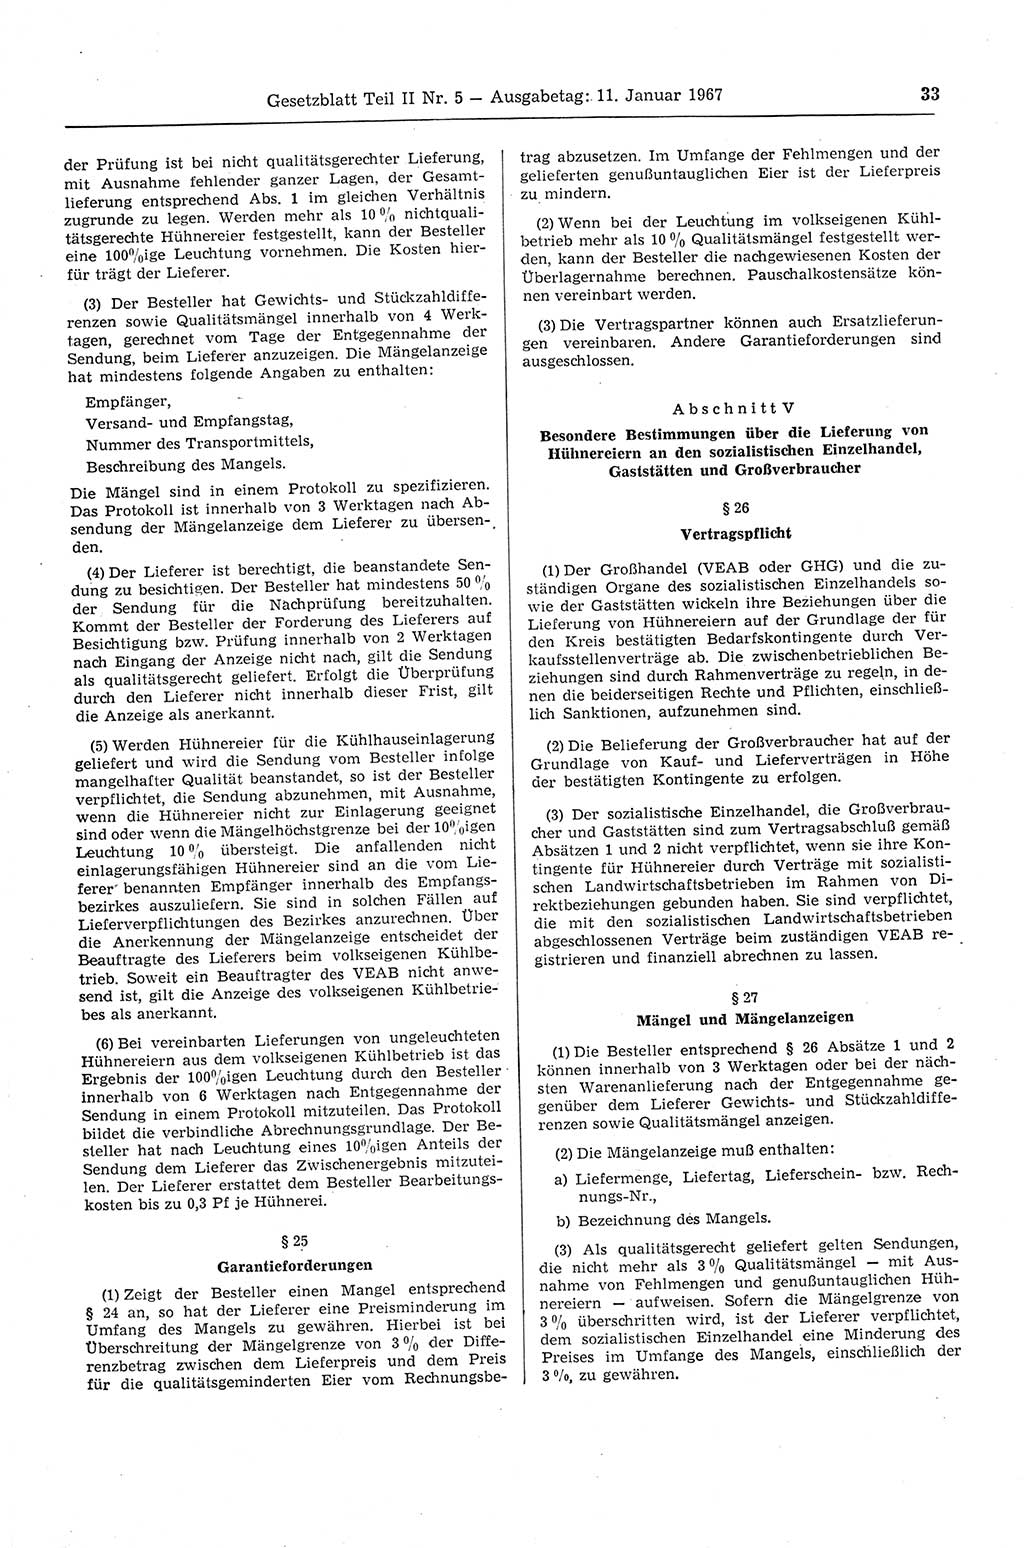 Gesetzblatt (GBl.) der Deutschen Demokratischen Republik (DDR) Teil ⅠⅠ 1967, Seite 33 (GBl. DDR ⅠⅠ 1967, S. 33)